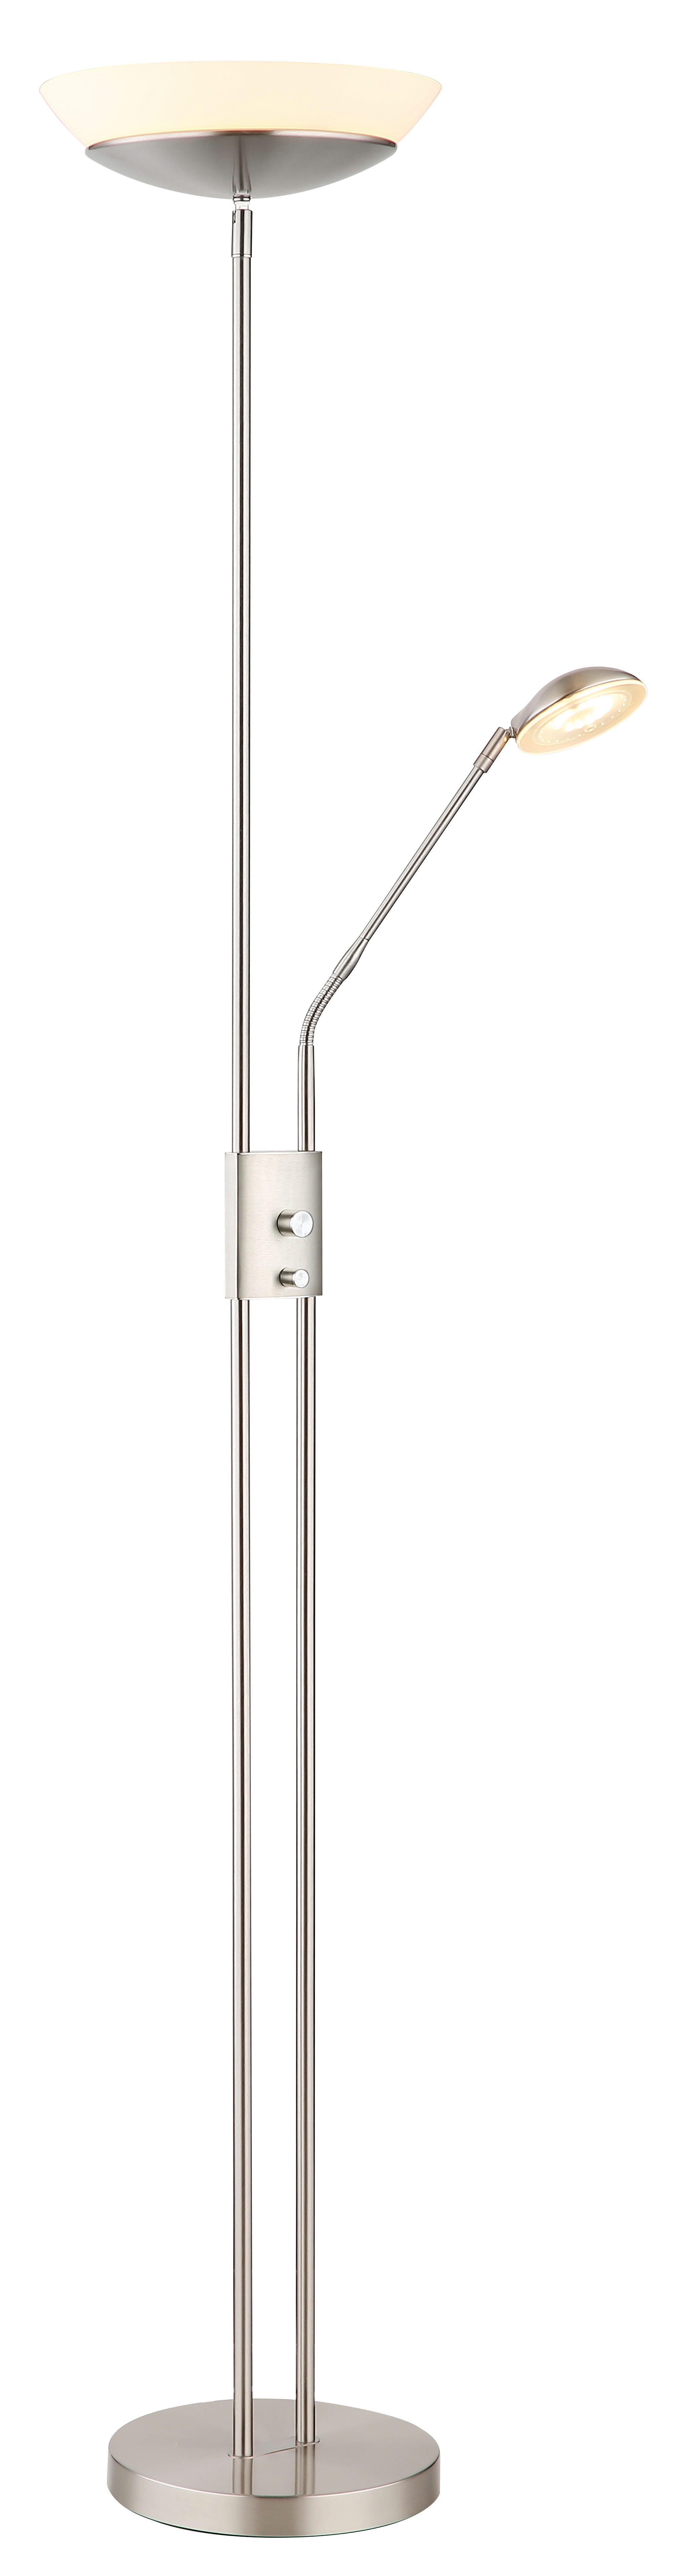 LED-DECKENFLUTER 29/180 cm    - Opal/Nickelfarben, KONVENTIONELL, Glas/Kunststoff (29/180cm) - Globo